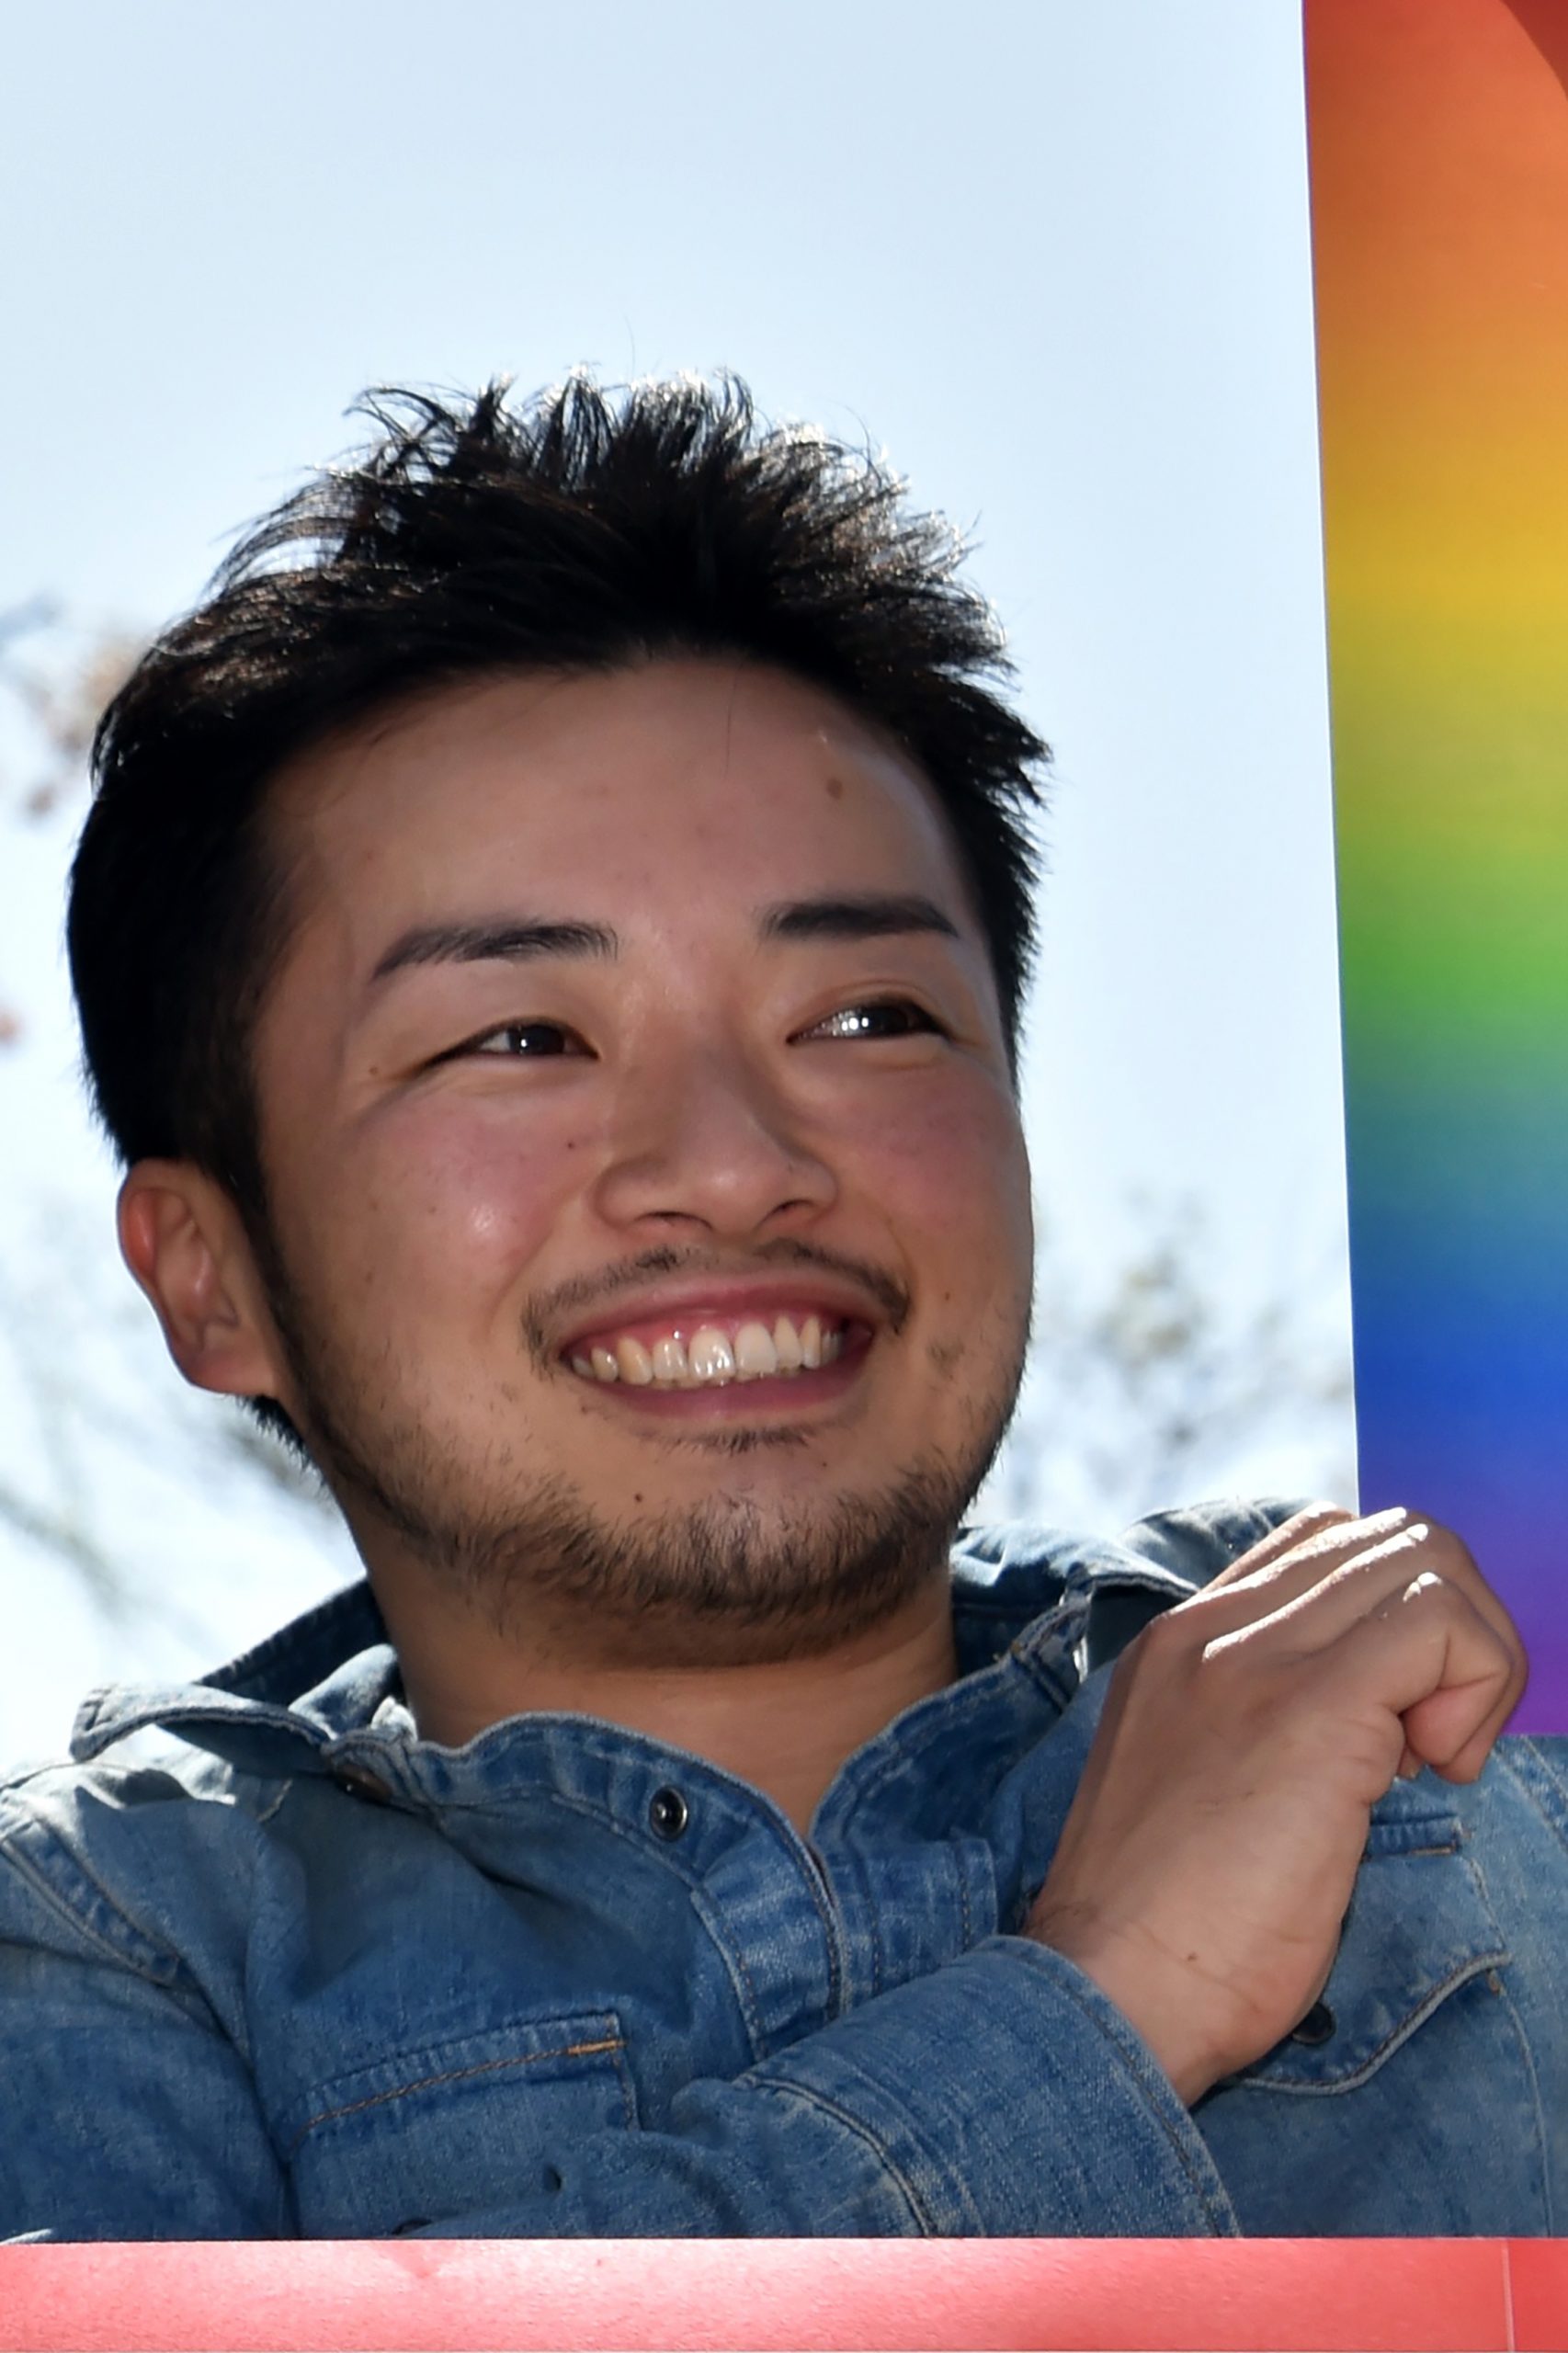 Japanese gay chubby